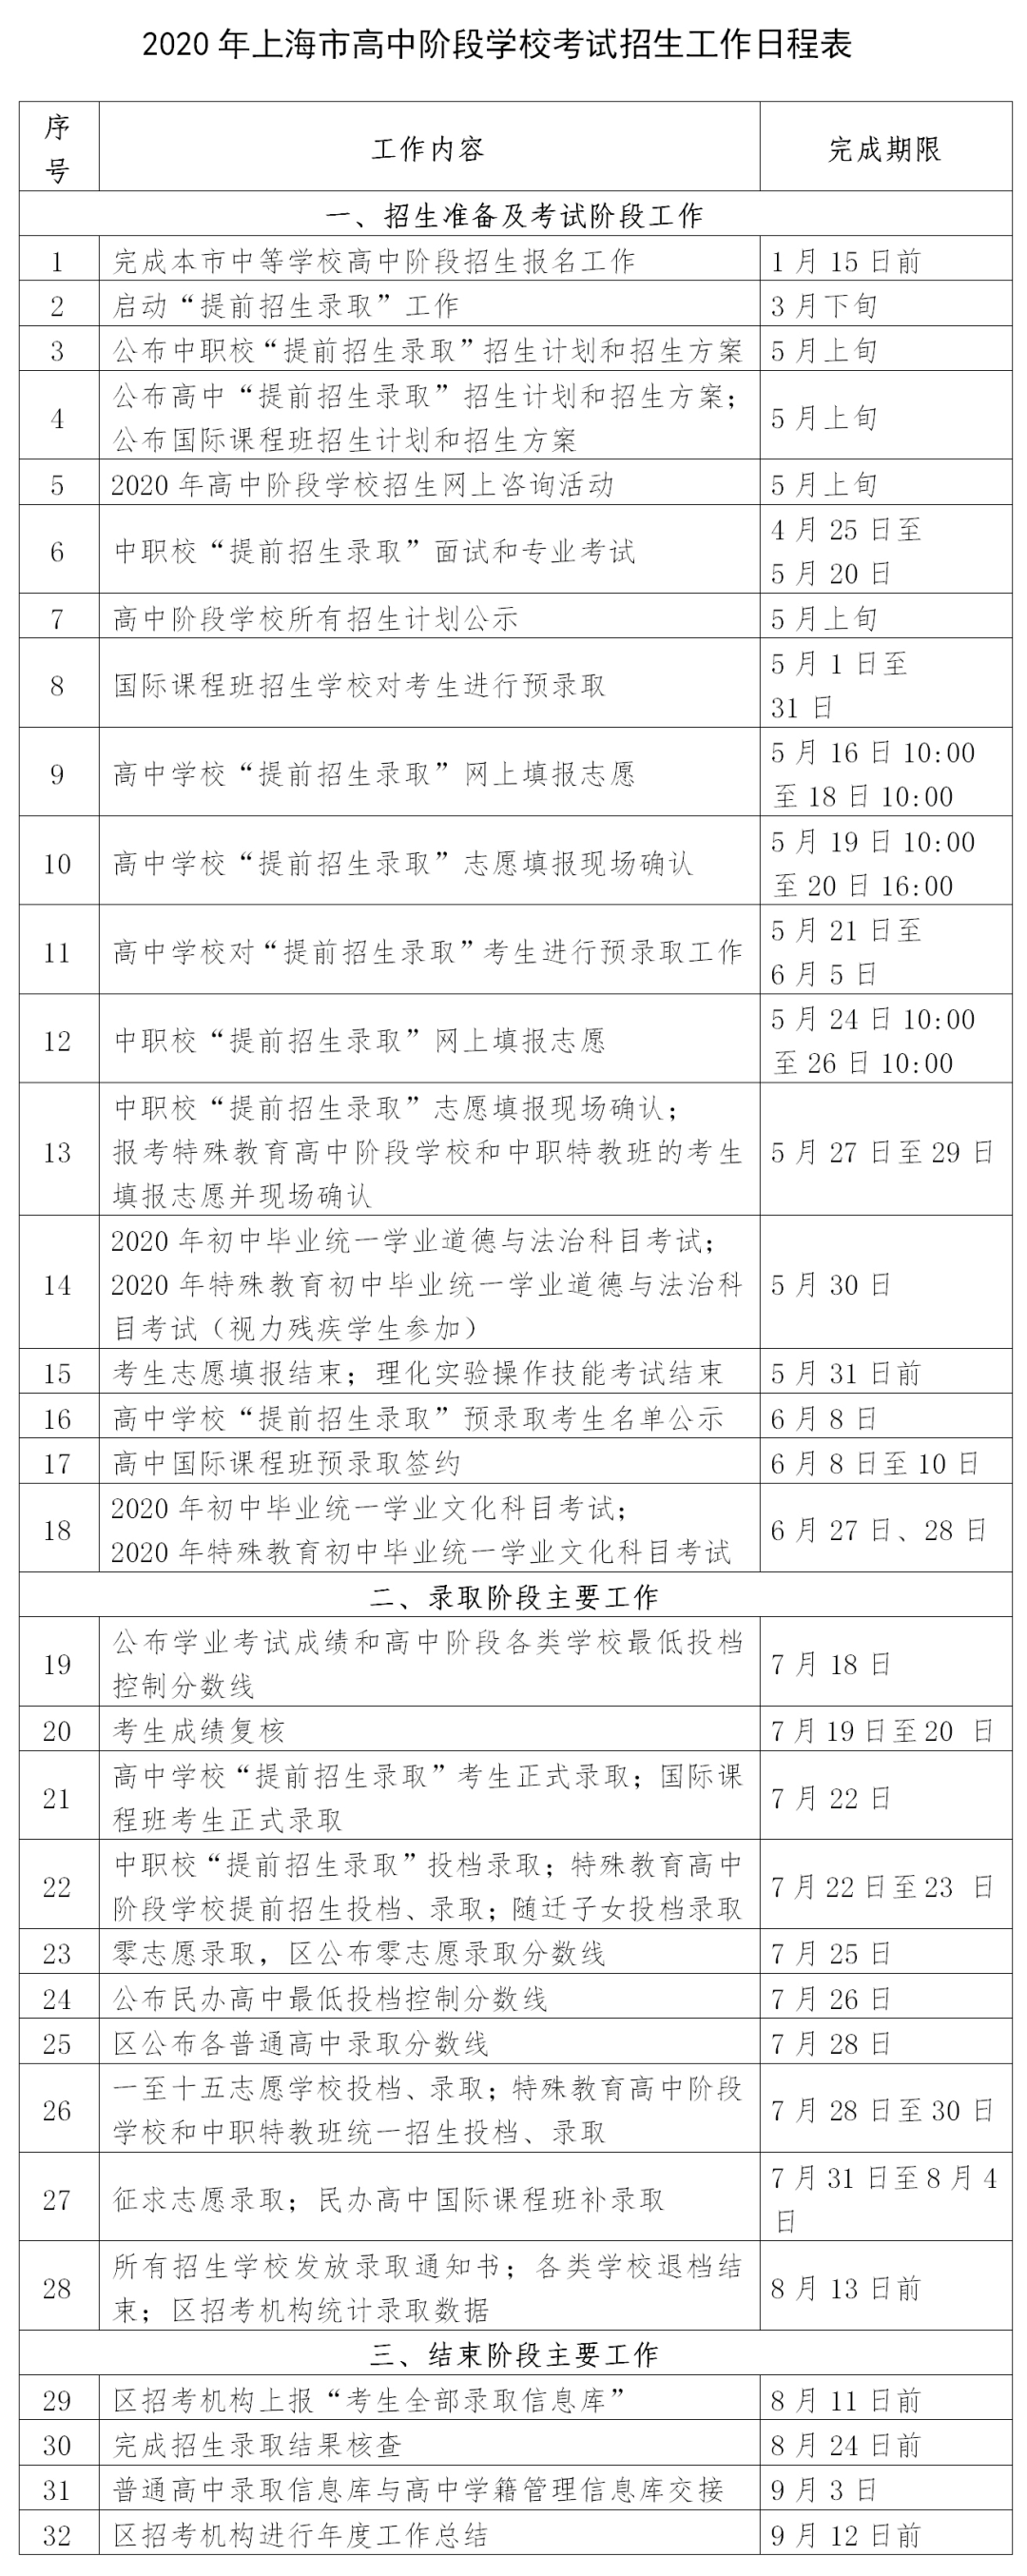 2020上海中考招生工作实施意见公布2